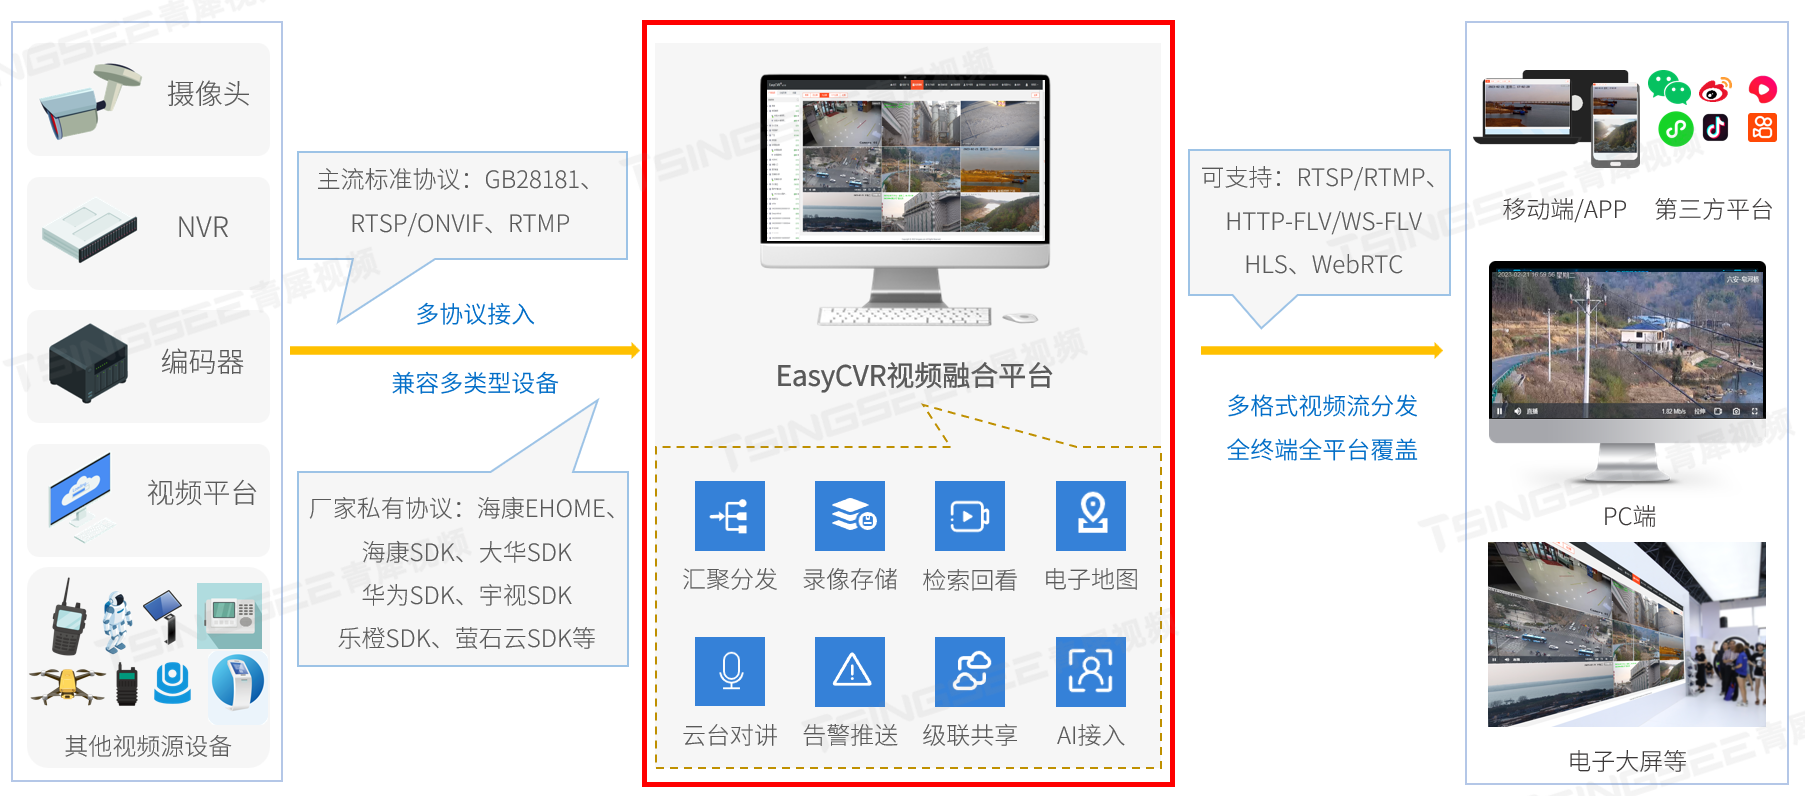 视频监控EasyCVR如何通过设置sei接口，实现在webrtc视频流中添加画框和文字？